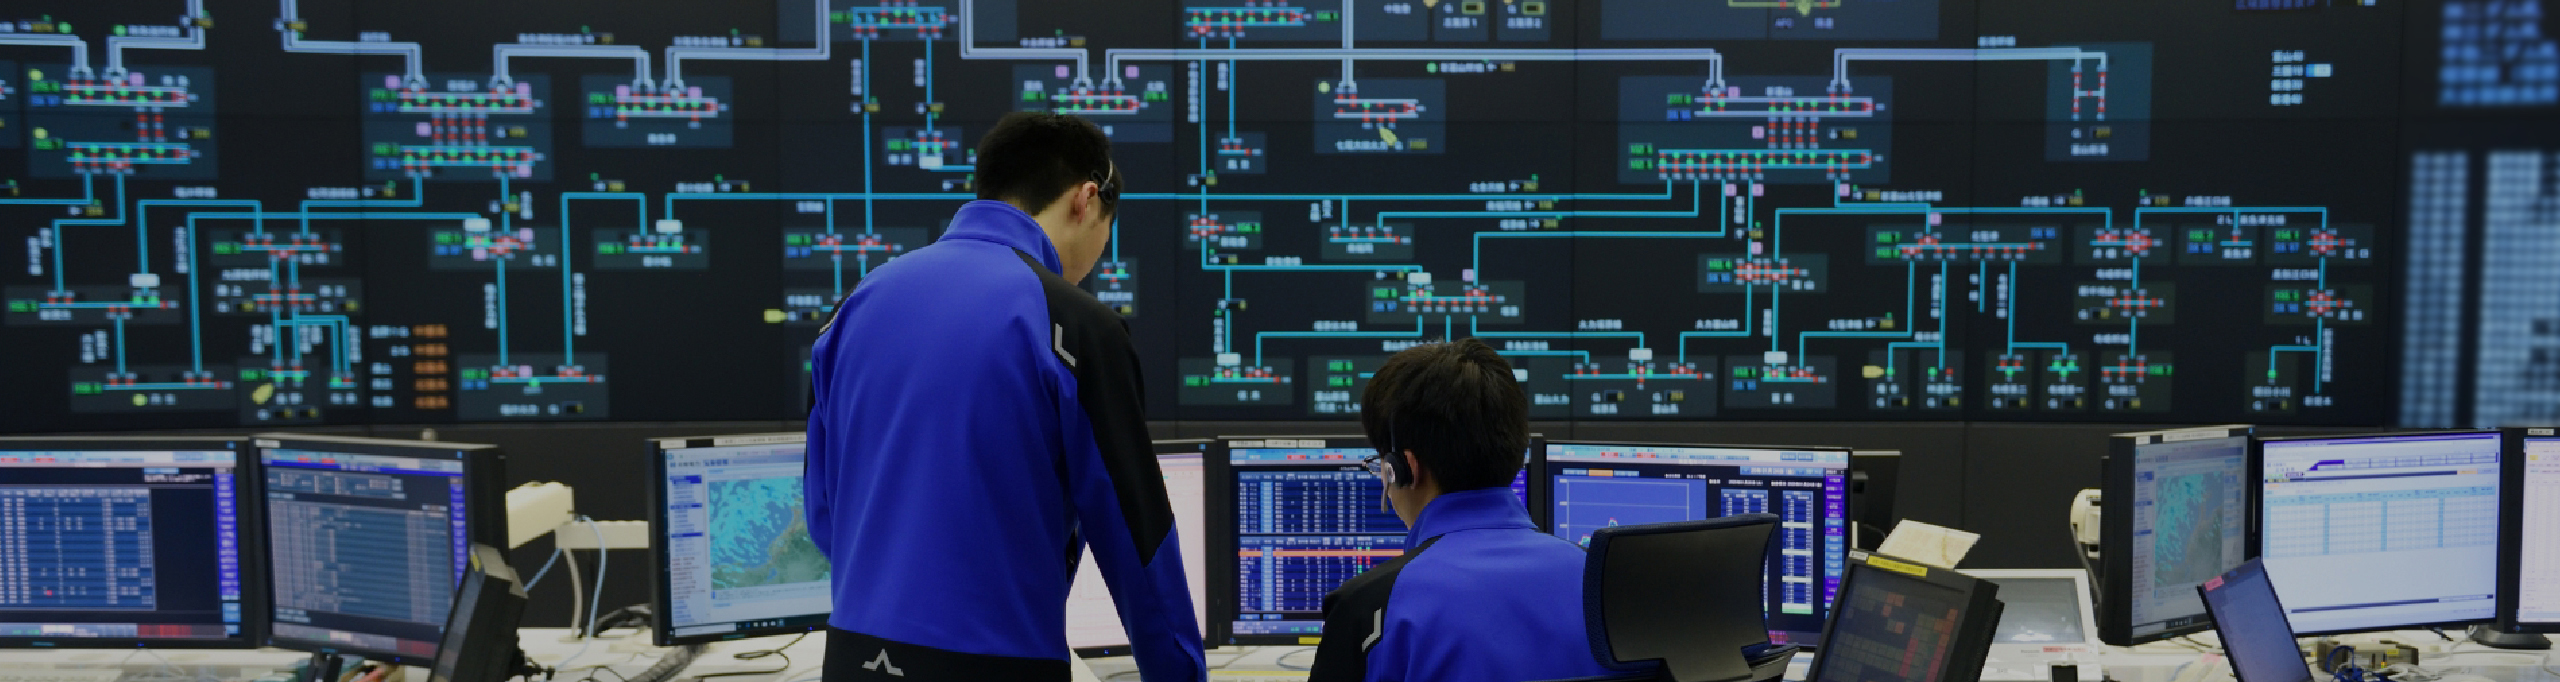 地域を想い、次を創る Hokuriku Electric Power Company Recruit